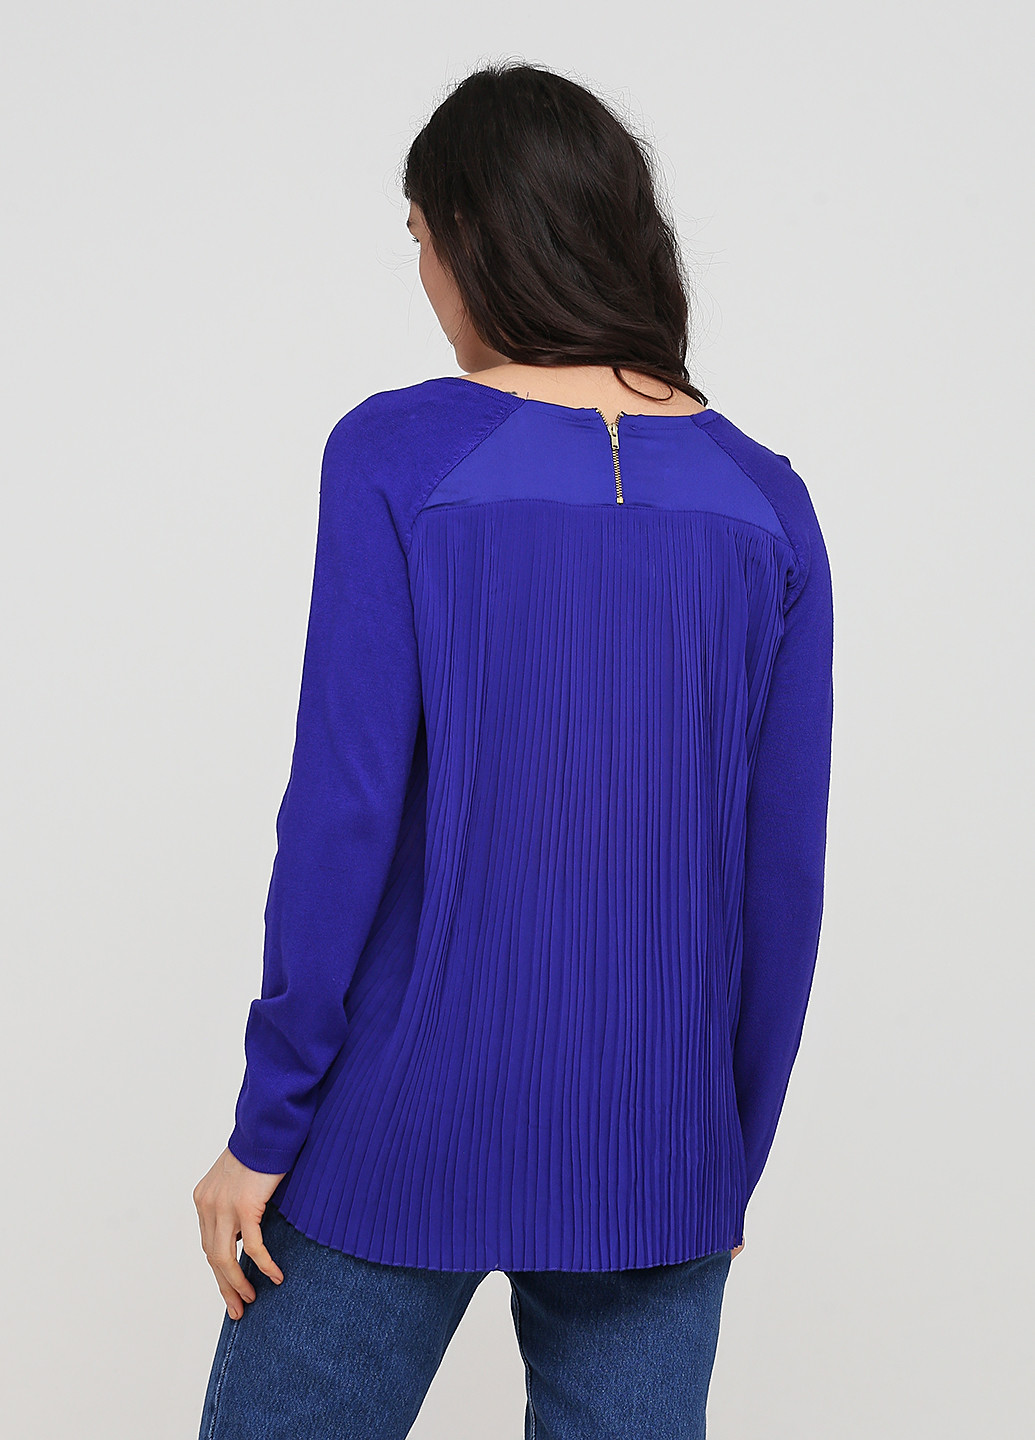 Фиолетовый демисезонный пуловер пуловер Kookai